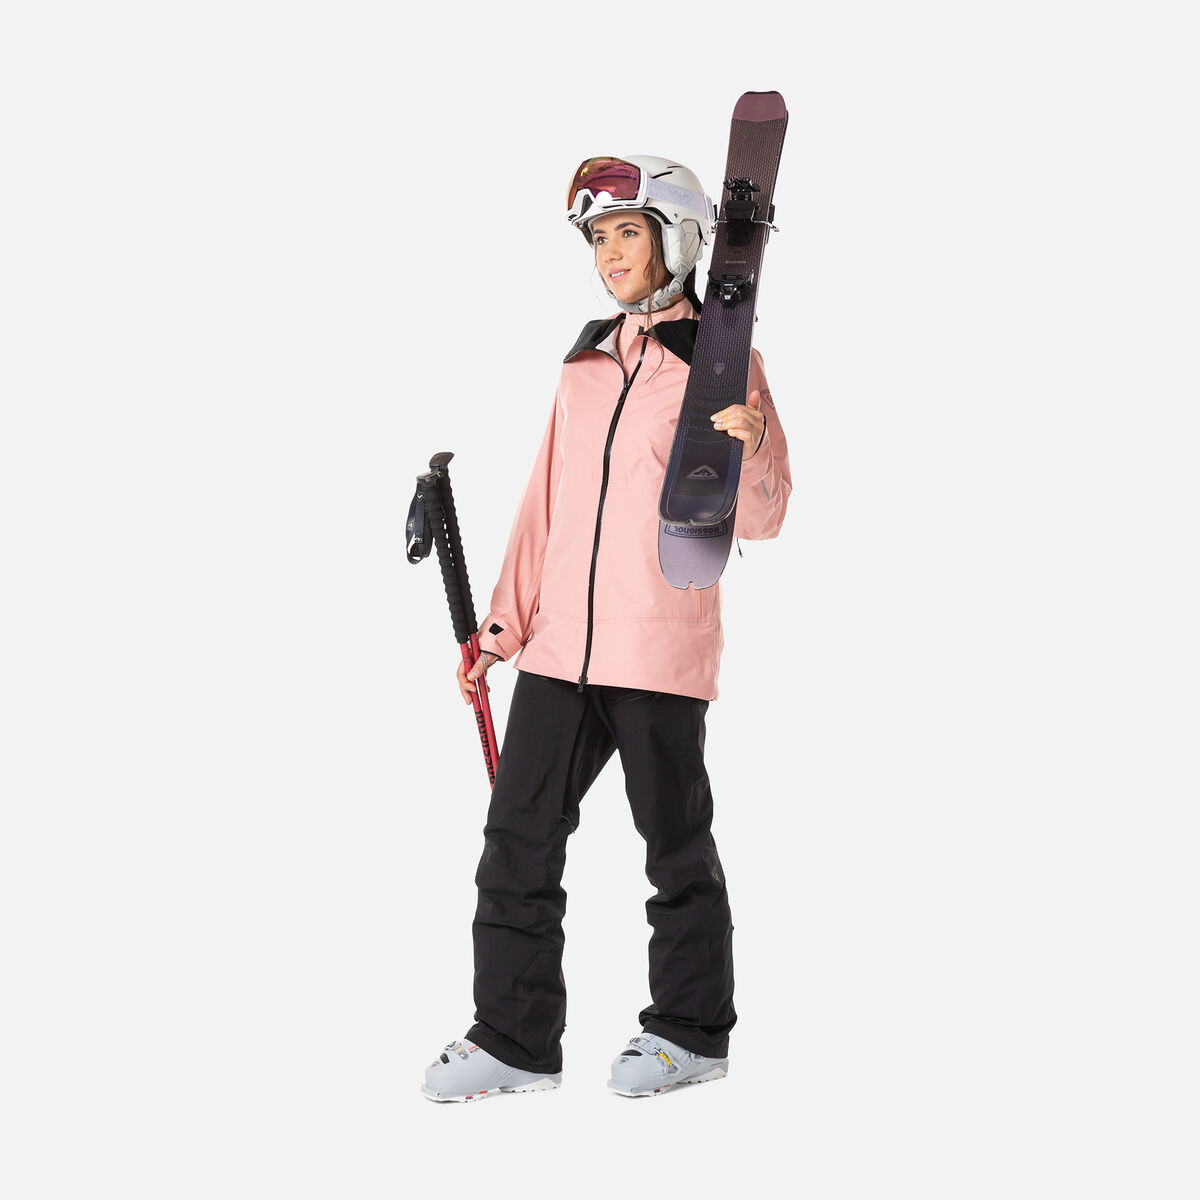 Pantalones de esquí SKPR 3L Ayr para mujer